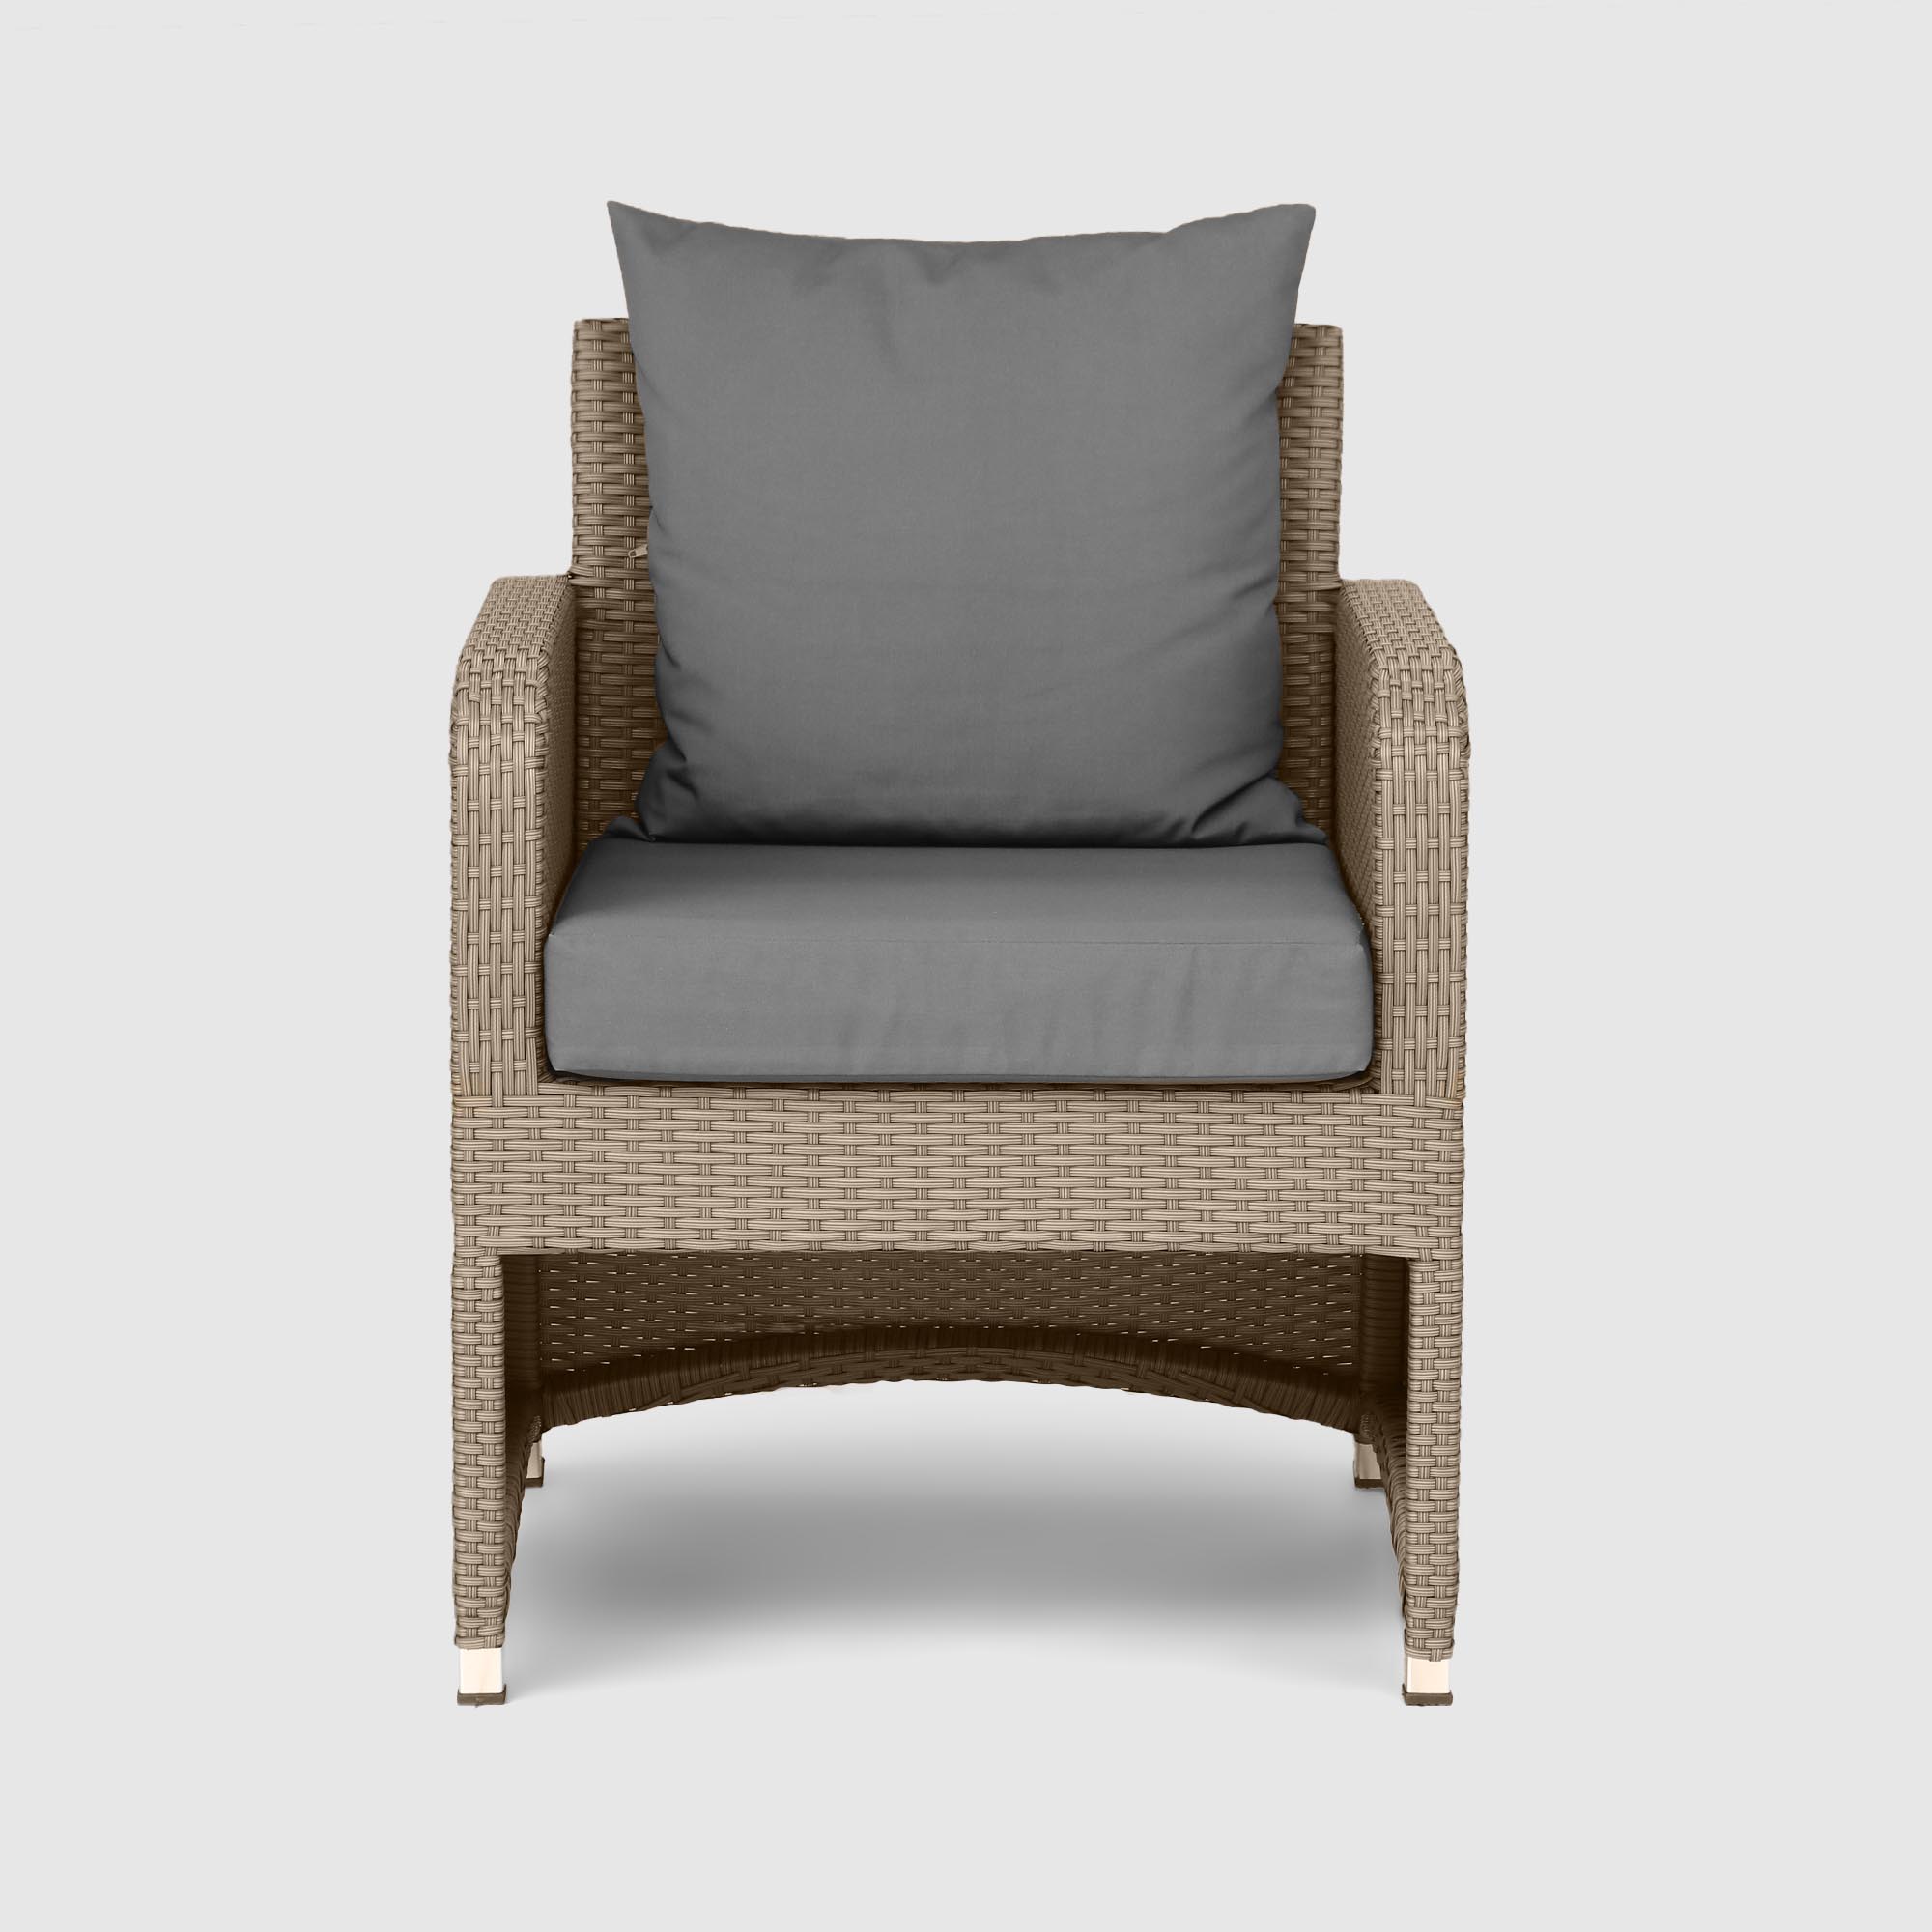 Комплект мебели NS Rattan LWS 21 коричневый с серым 3 предмета, цвет светло-коричневый, размер 220х75х75 - фото 3